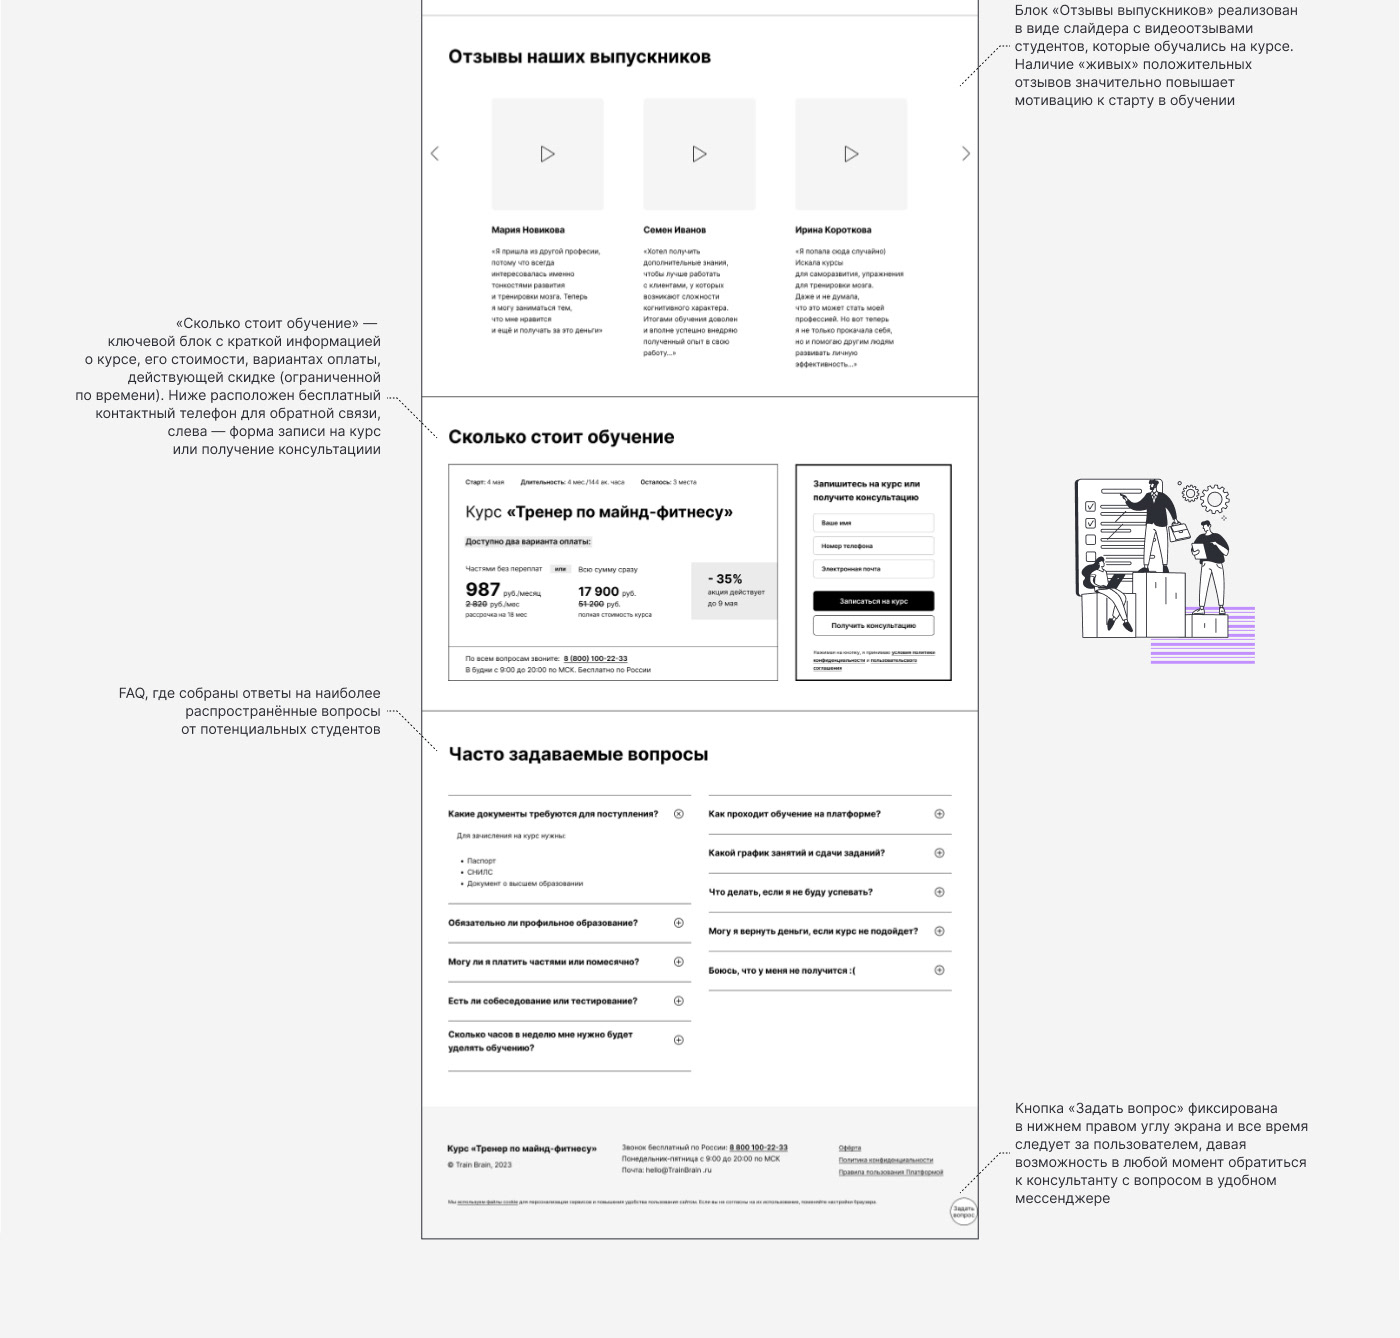 landing page UI/UX Figma user interface Web Design  branding  графический дизайн айдентика Проектирование интерфейса Прототипирование